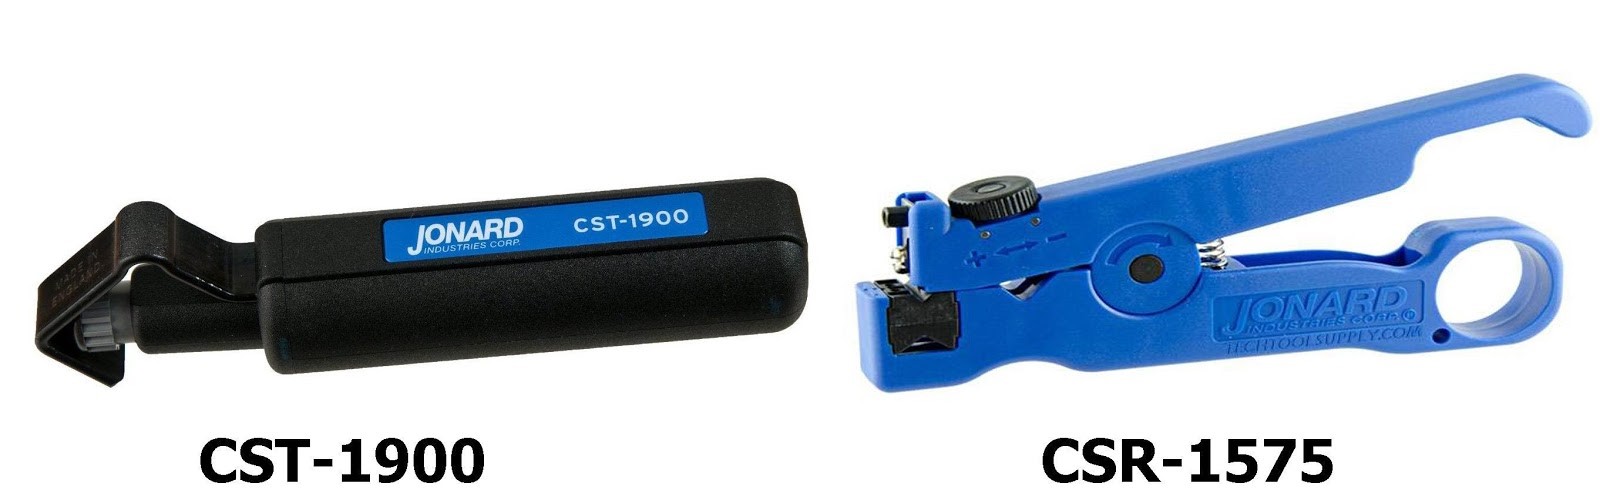 Стрипперы CST-1900 и CSR-1575